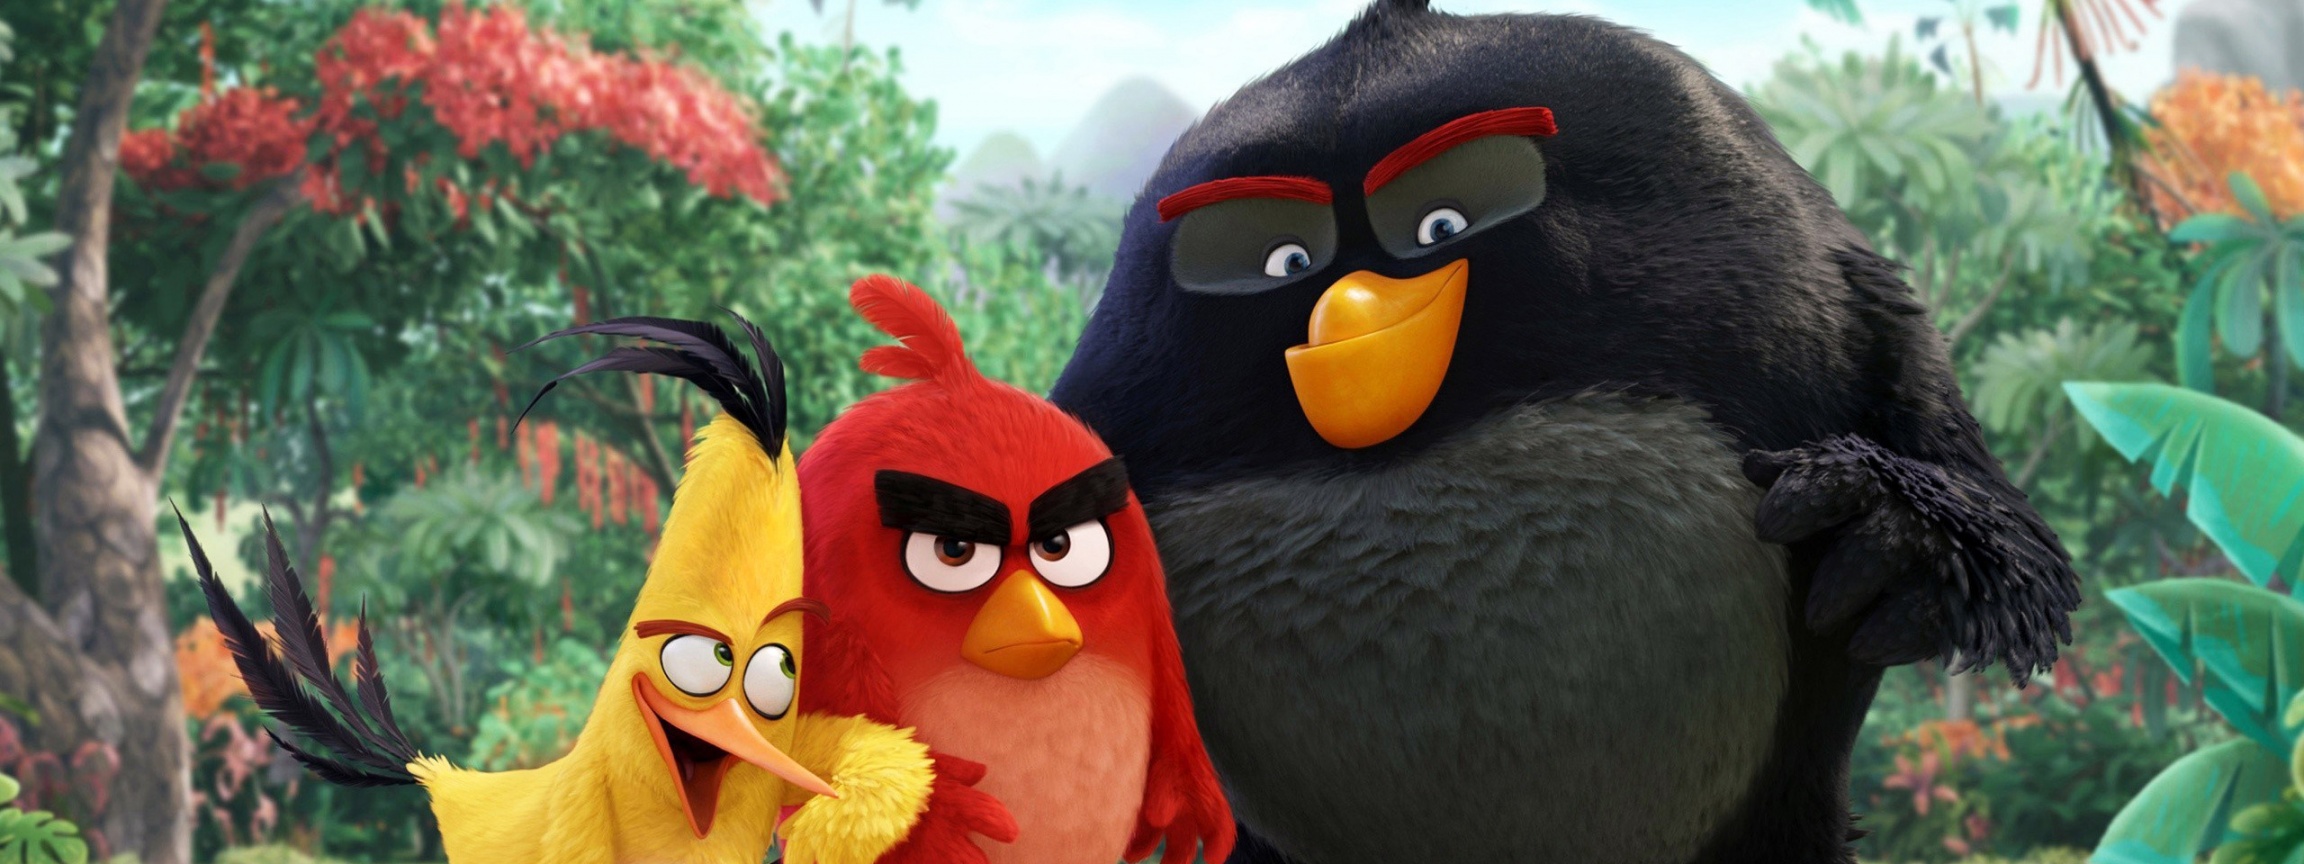 Angry Birds Movie